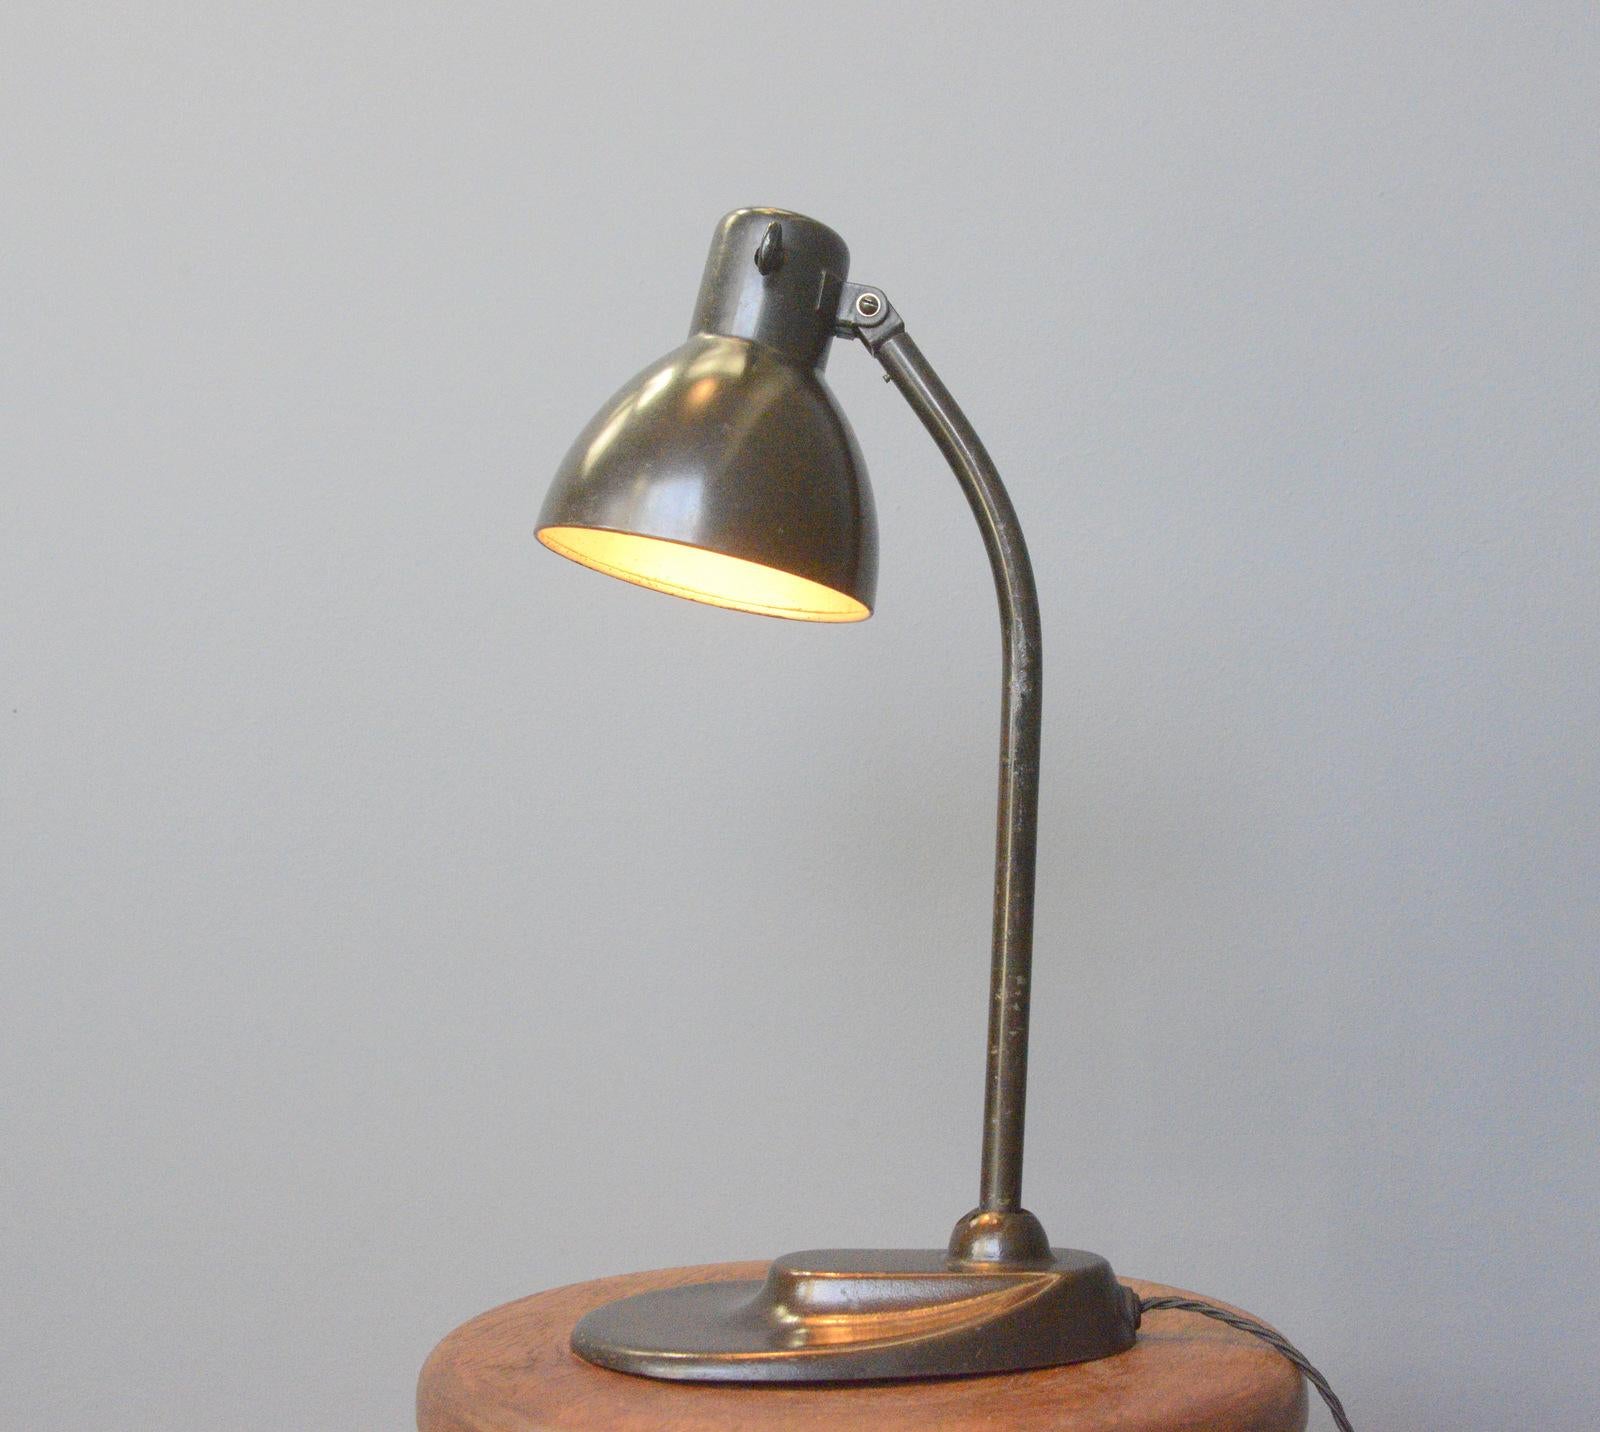 Lampe de table modèle 752 par Kandem Circa 1930s.

- Peinture brune d'origine
- Pied en fonte avec bras en acier incurvé
- Abat-jour et bras réglables
- Interrupteur à bascule On/Off original en bakélite
- Convient aux ampoules de type E27
-